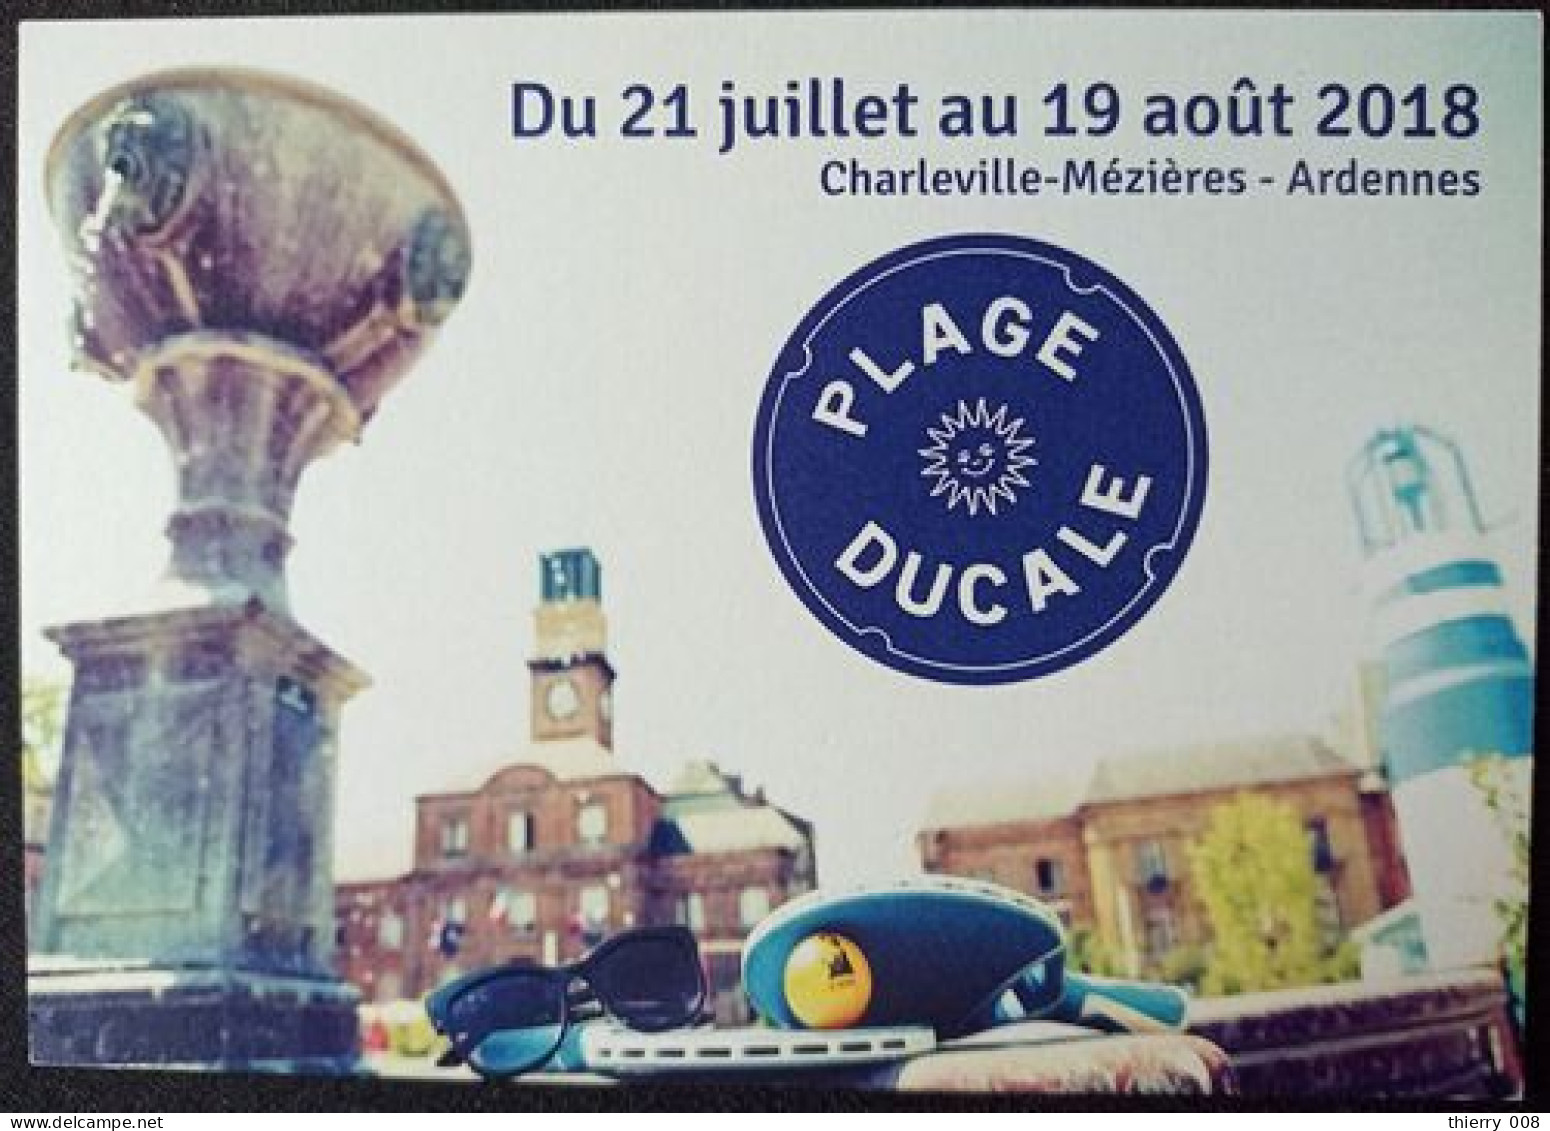 128 Carte Postale Plage Ducale Charleville-Mézières Ardennes 08 Année 2018 - Charleville